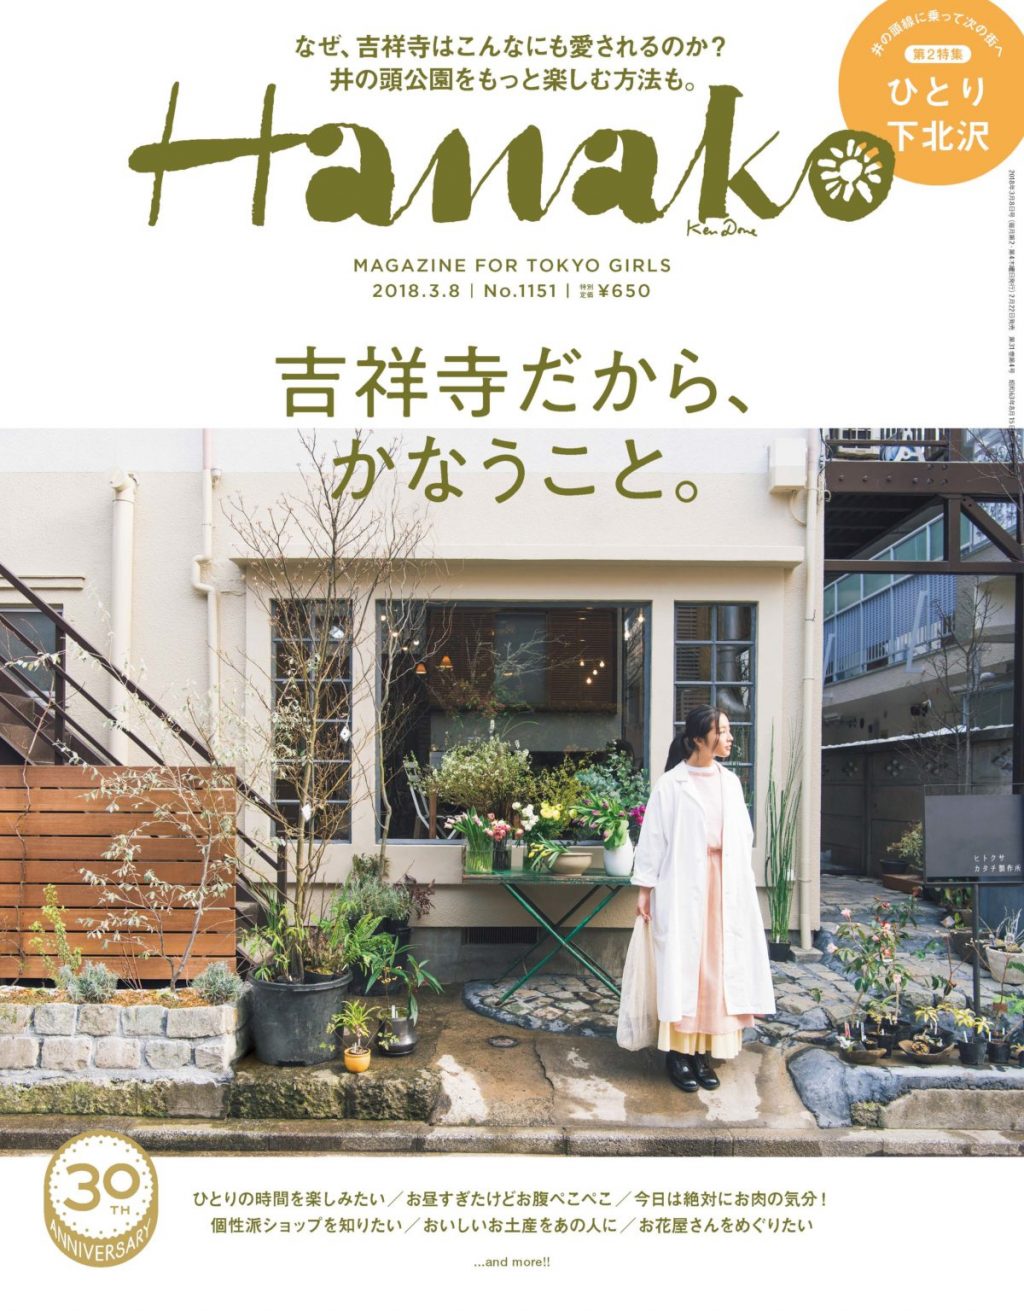 週末の 吉祥寺 散策の休憩に訪れたい おしゃれなショップ併設のカフェ2軒 Magazine Hanako Tokyo